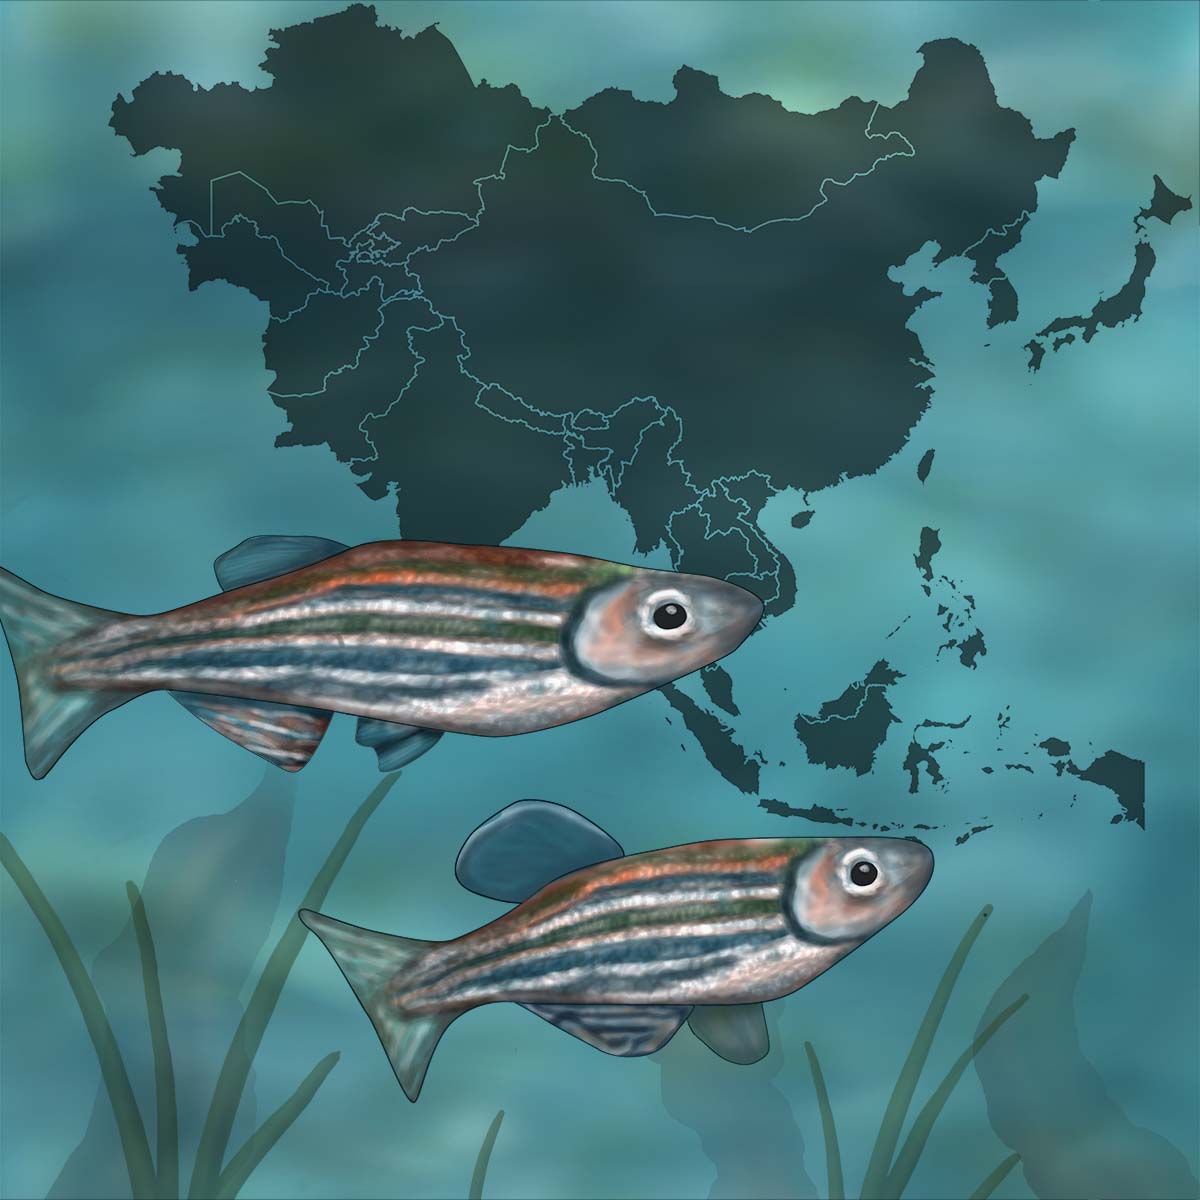 Illustration of zebrafish over a map